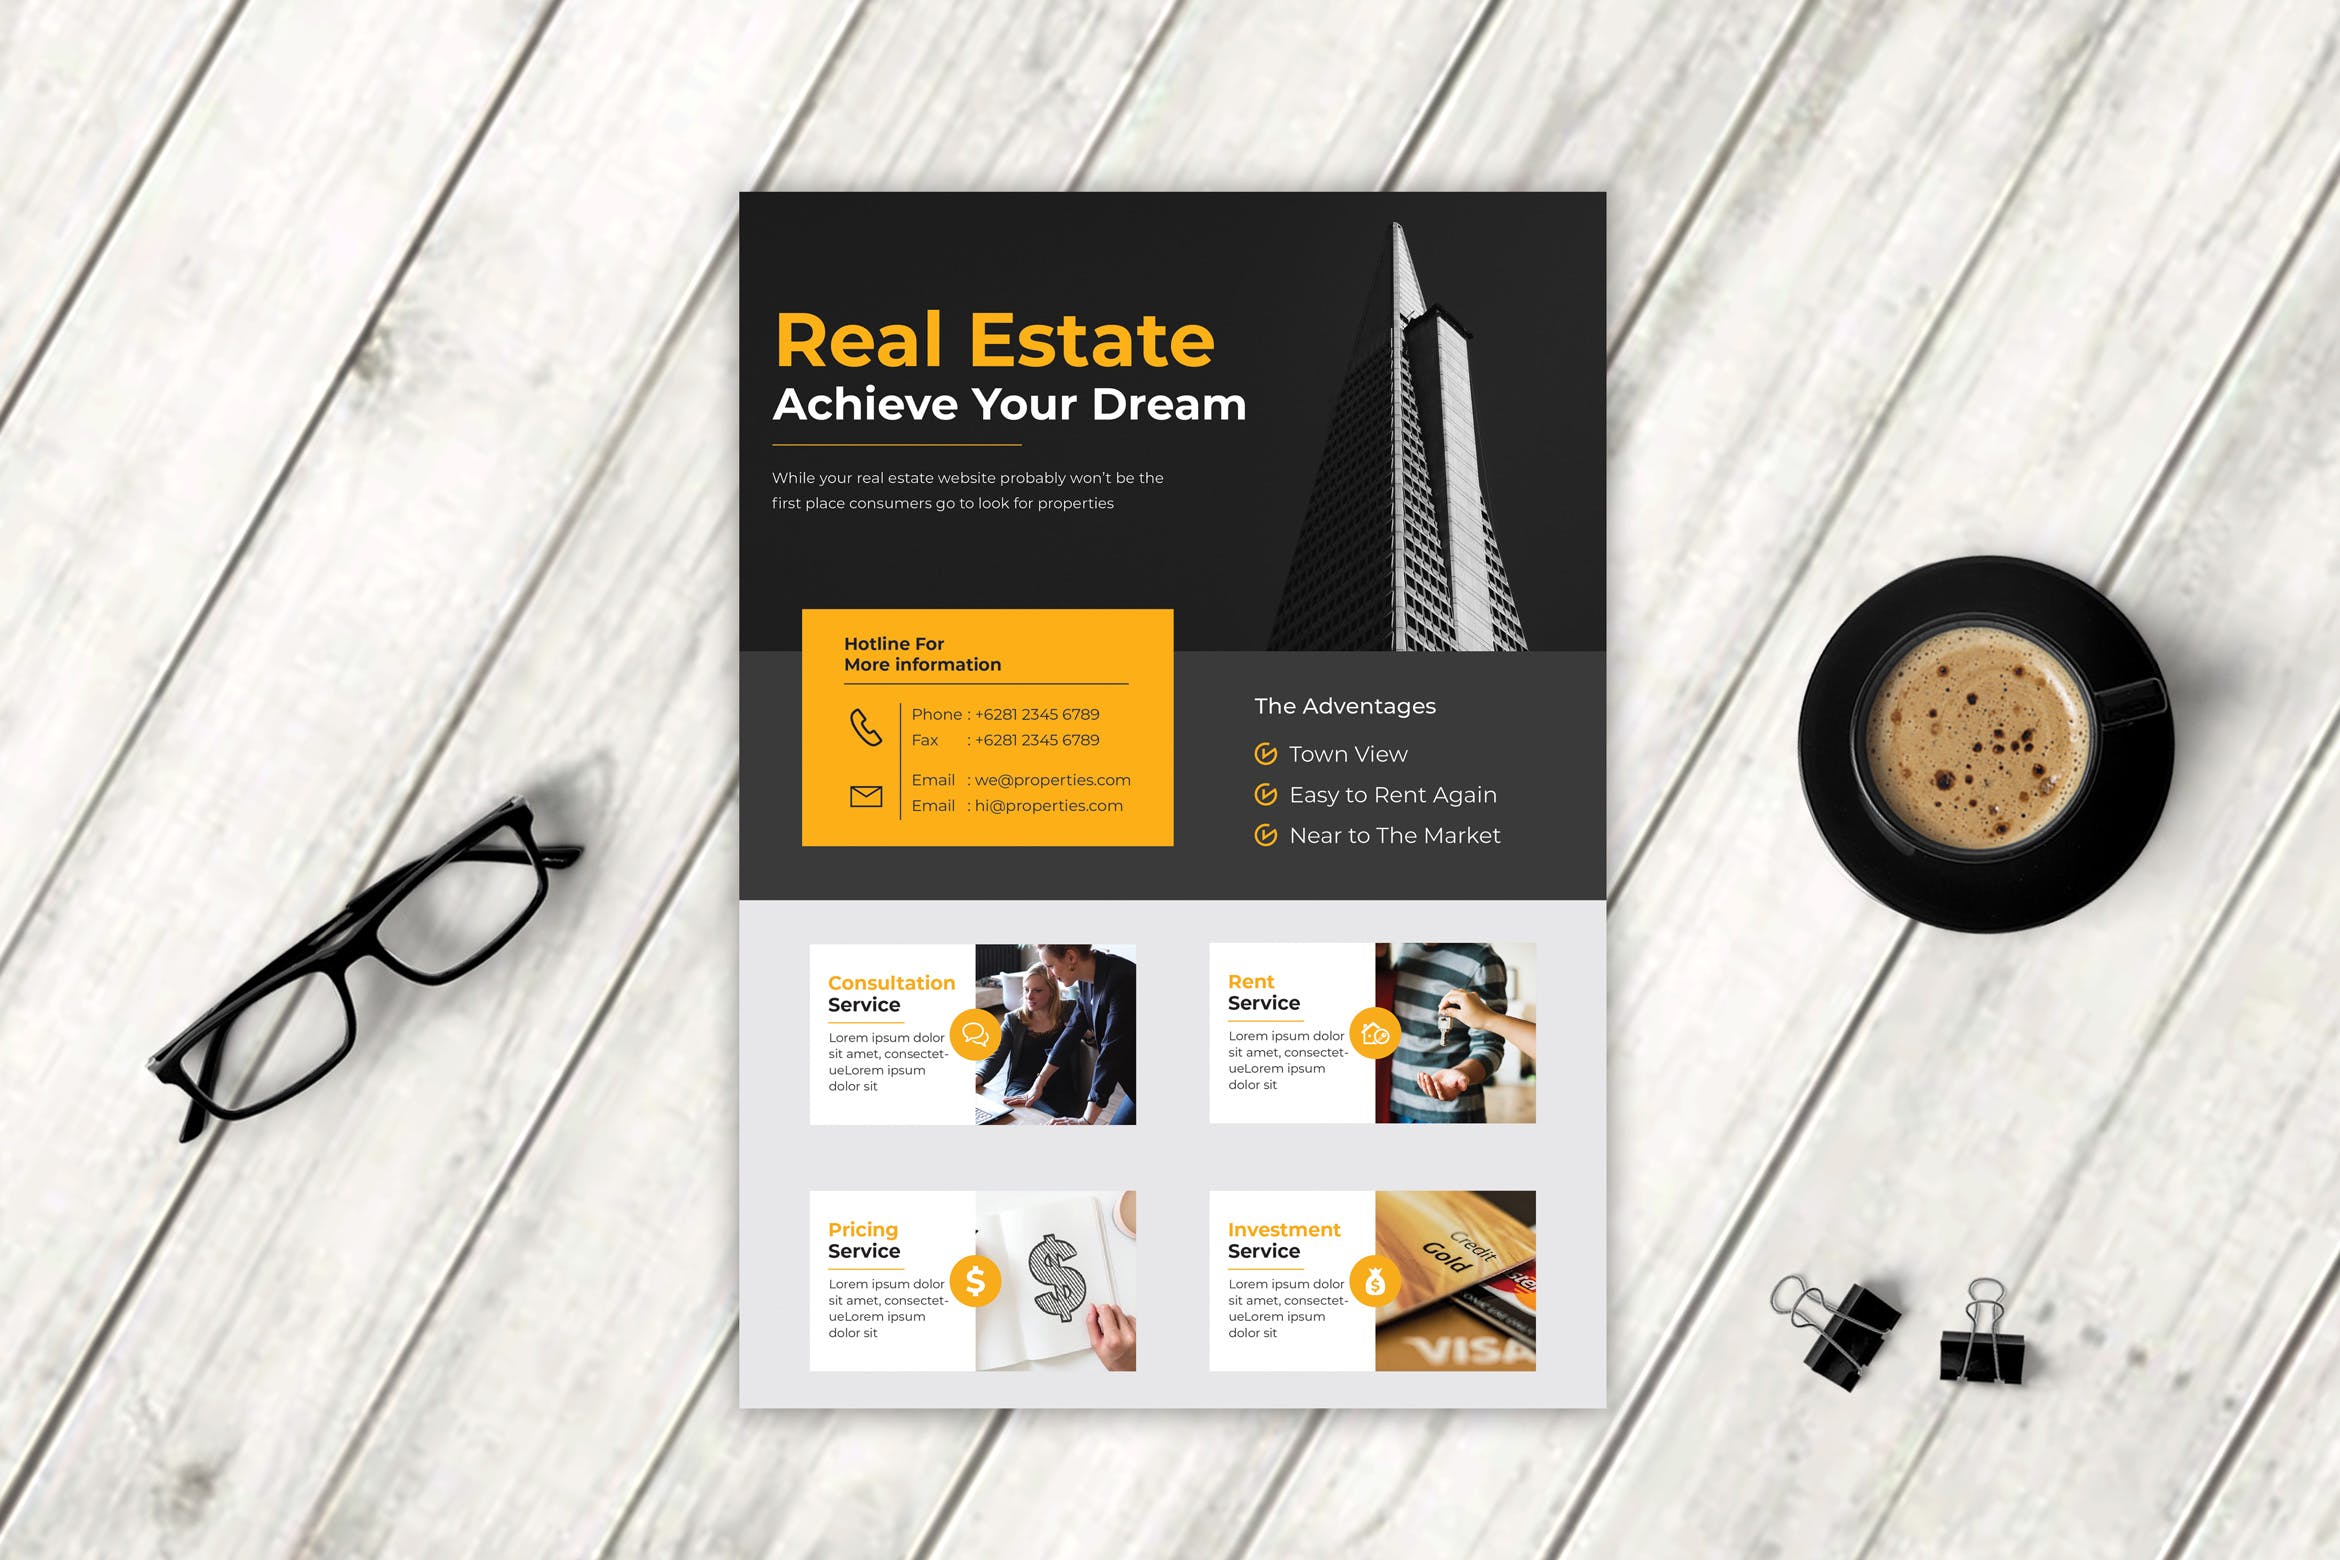 房产销售/中介主题海报传单设计模板v4 Real Estate Flyer Vol. 4插图